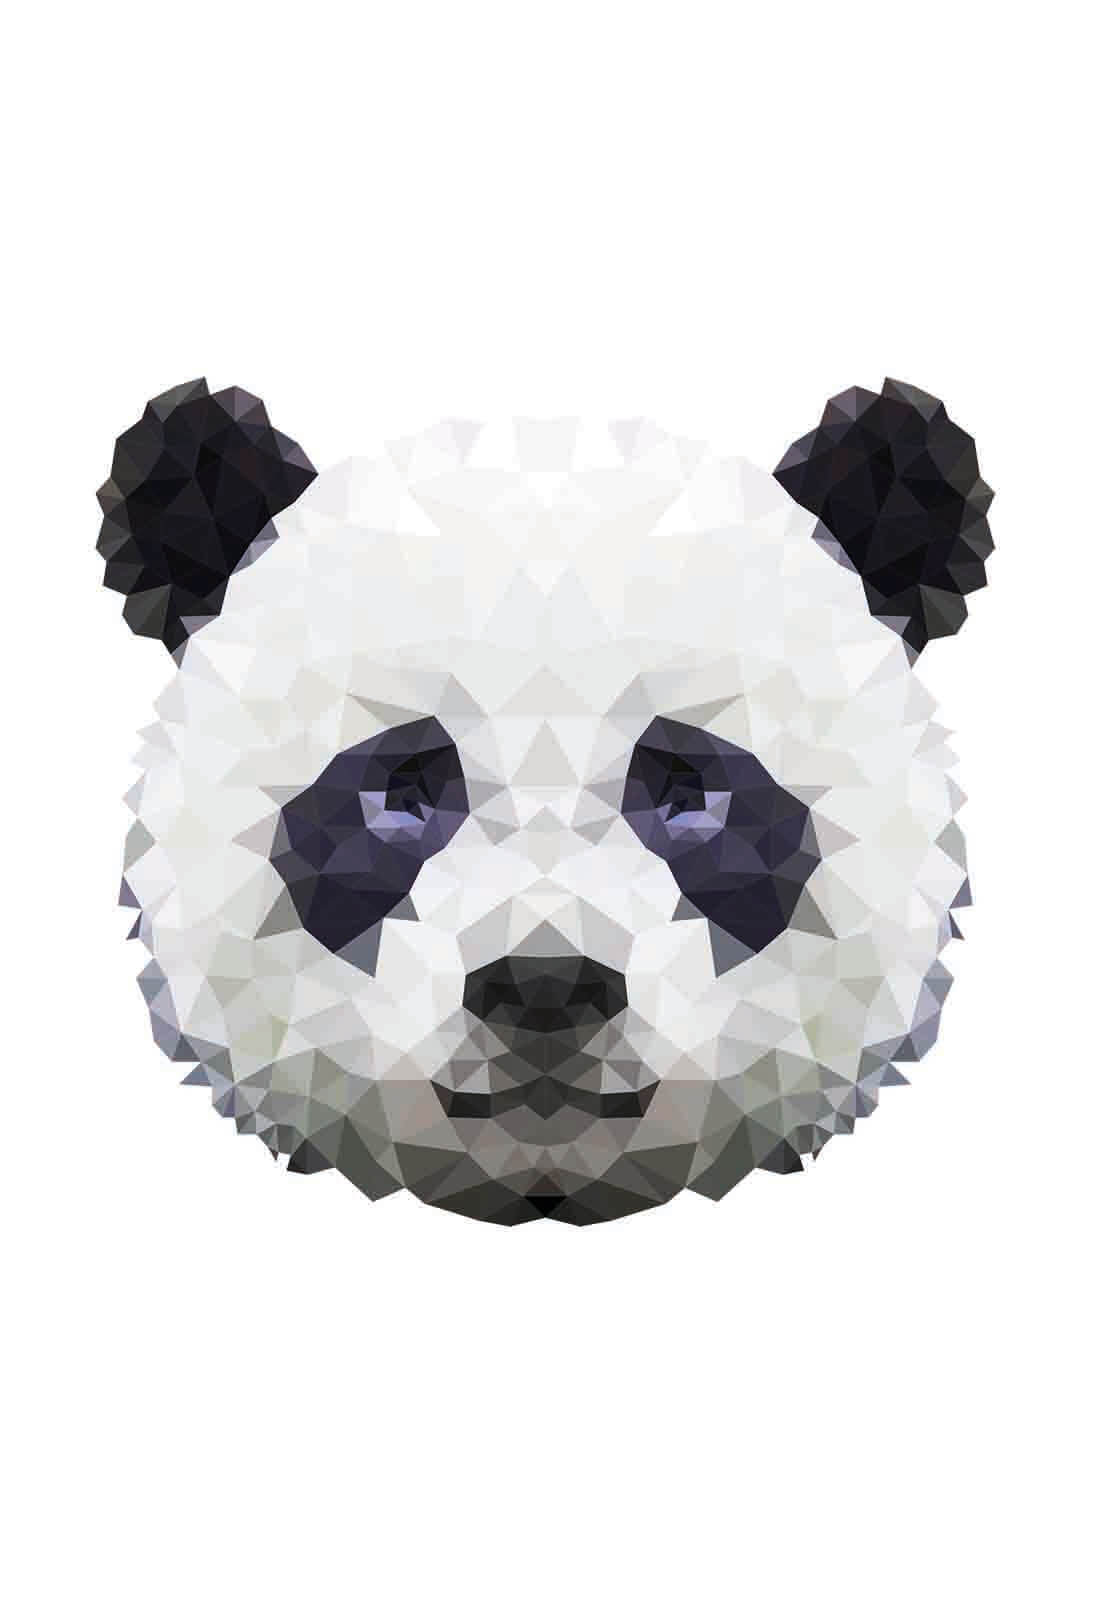 Pixxi Panda wanddecoratie kinderkamer